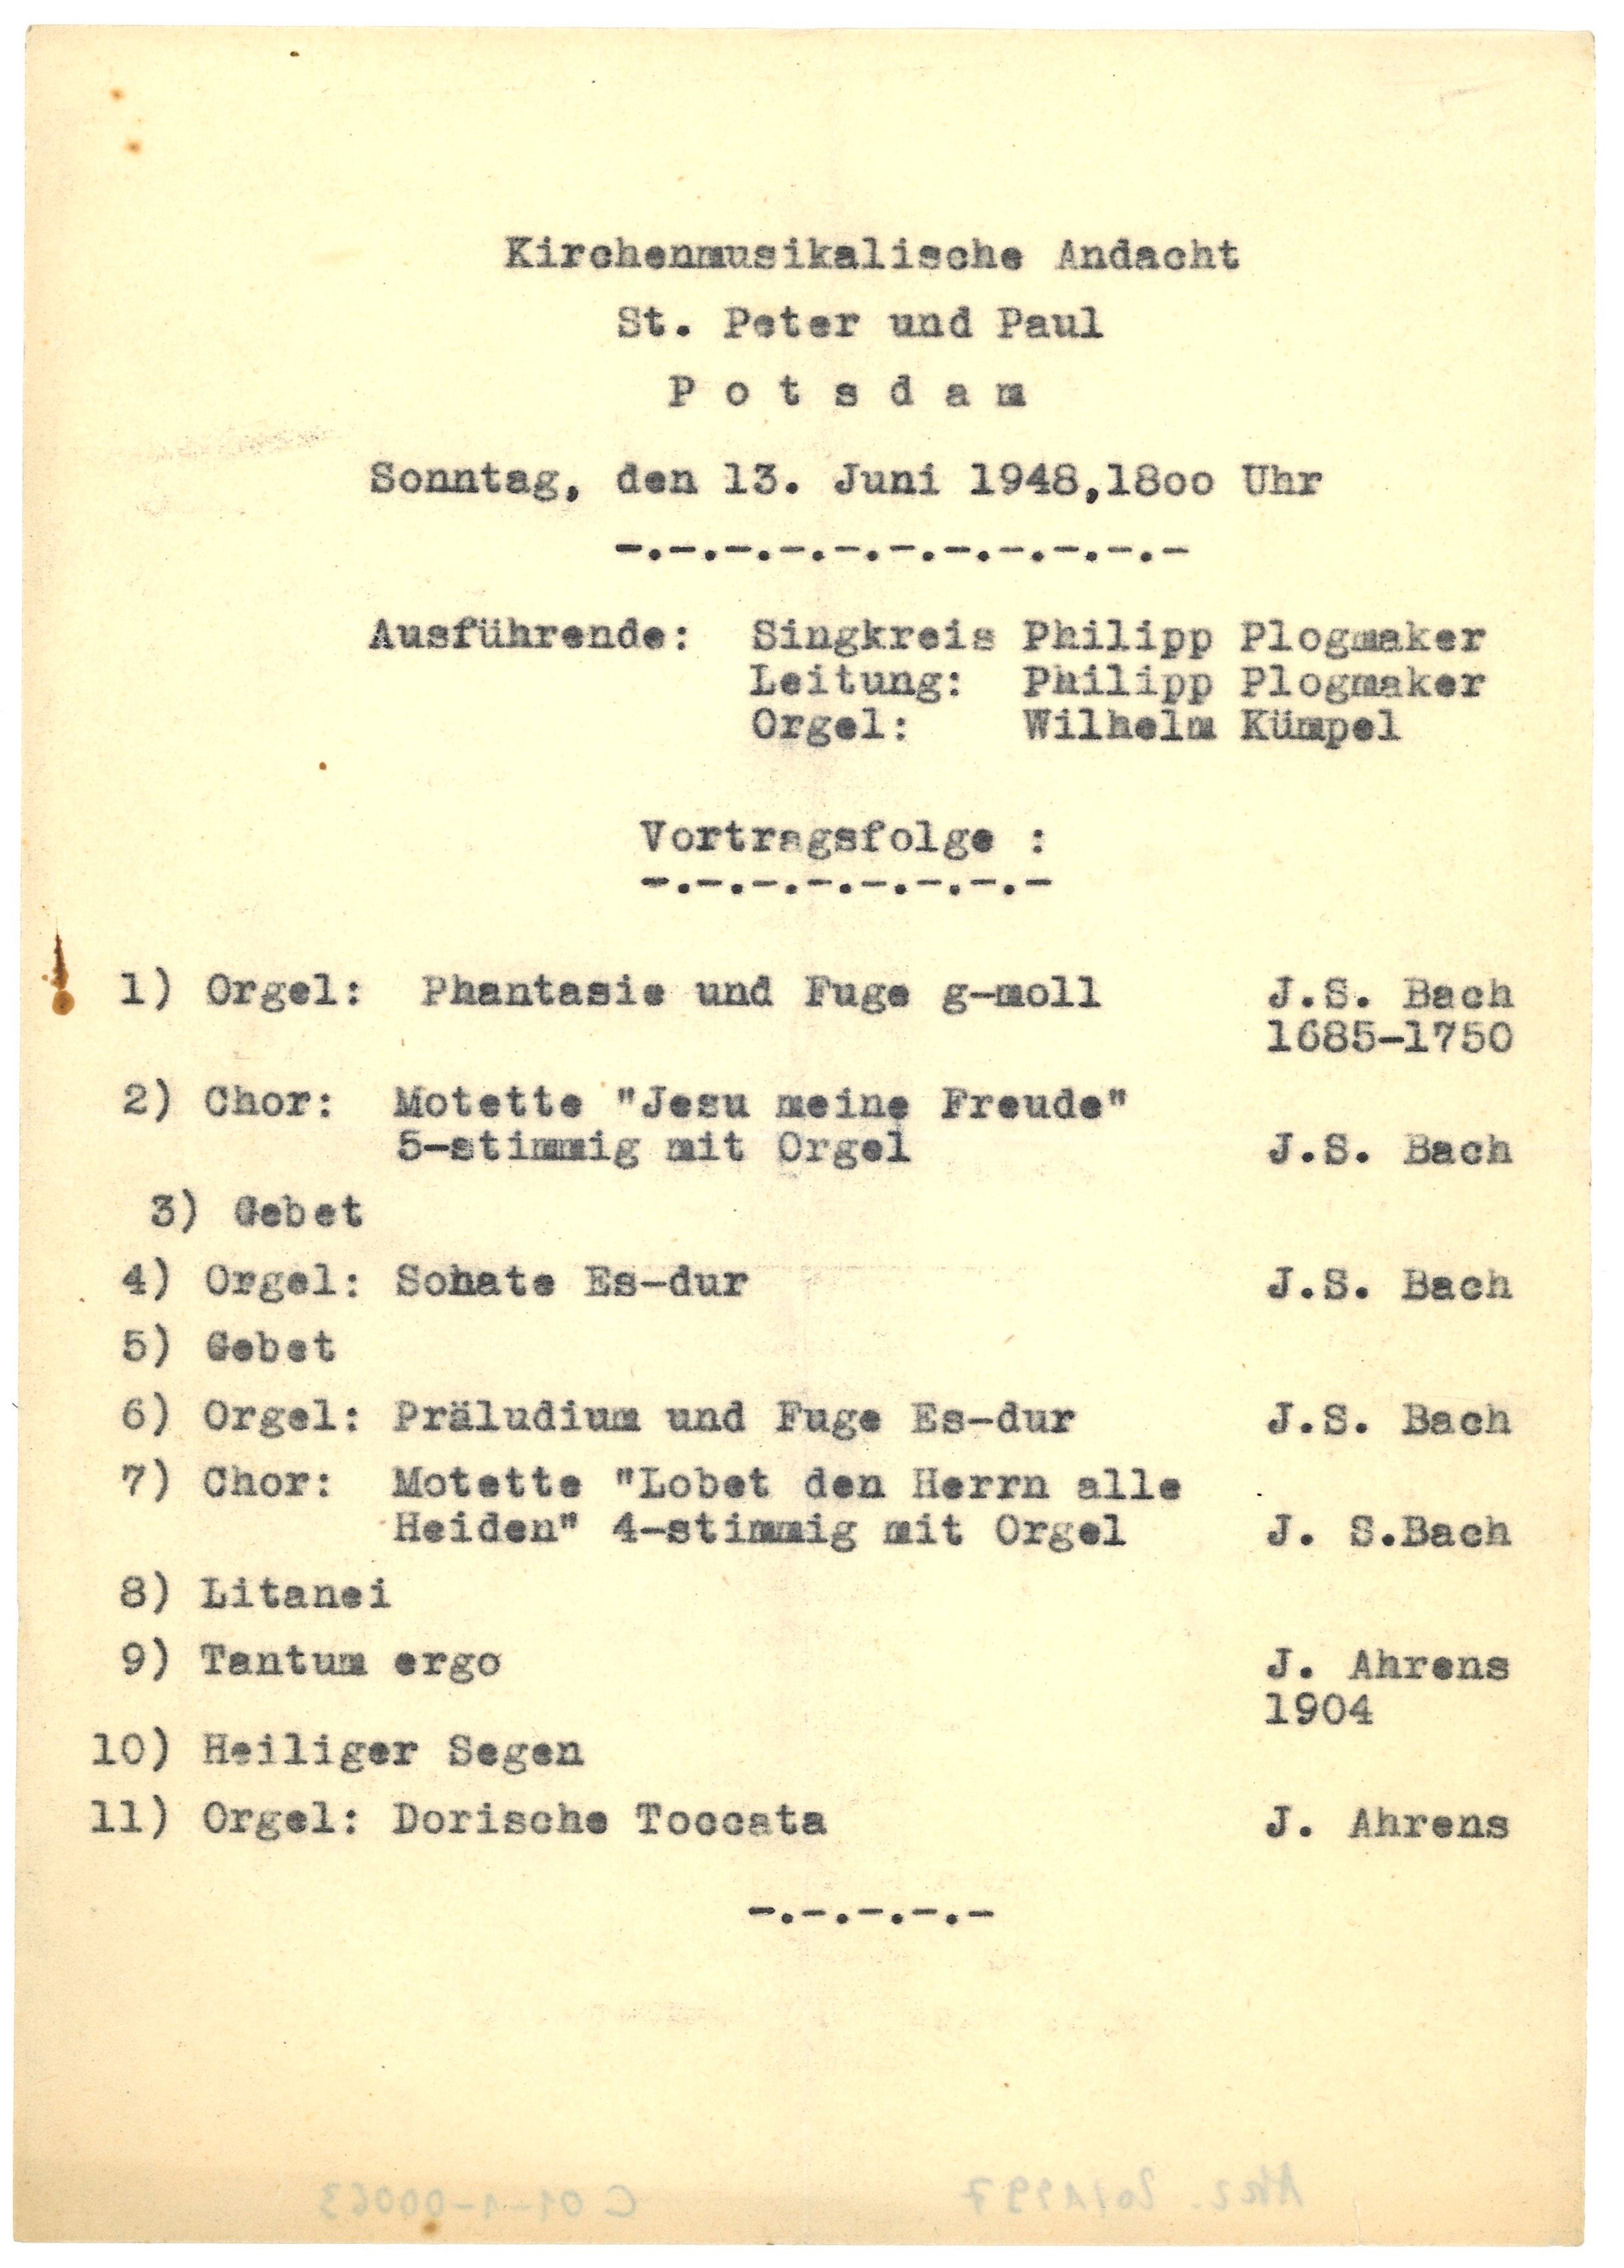 Programm der kirchenmusikalischen Andacht in St. Peter und Paul Potsdam am 13. Juni 1948 (Landesgeschichtliche Vereinigung für die Mark Brandenburg e.V., Archiv CC BY)